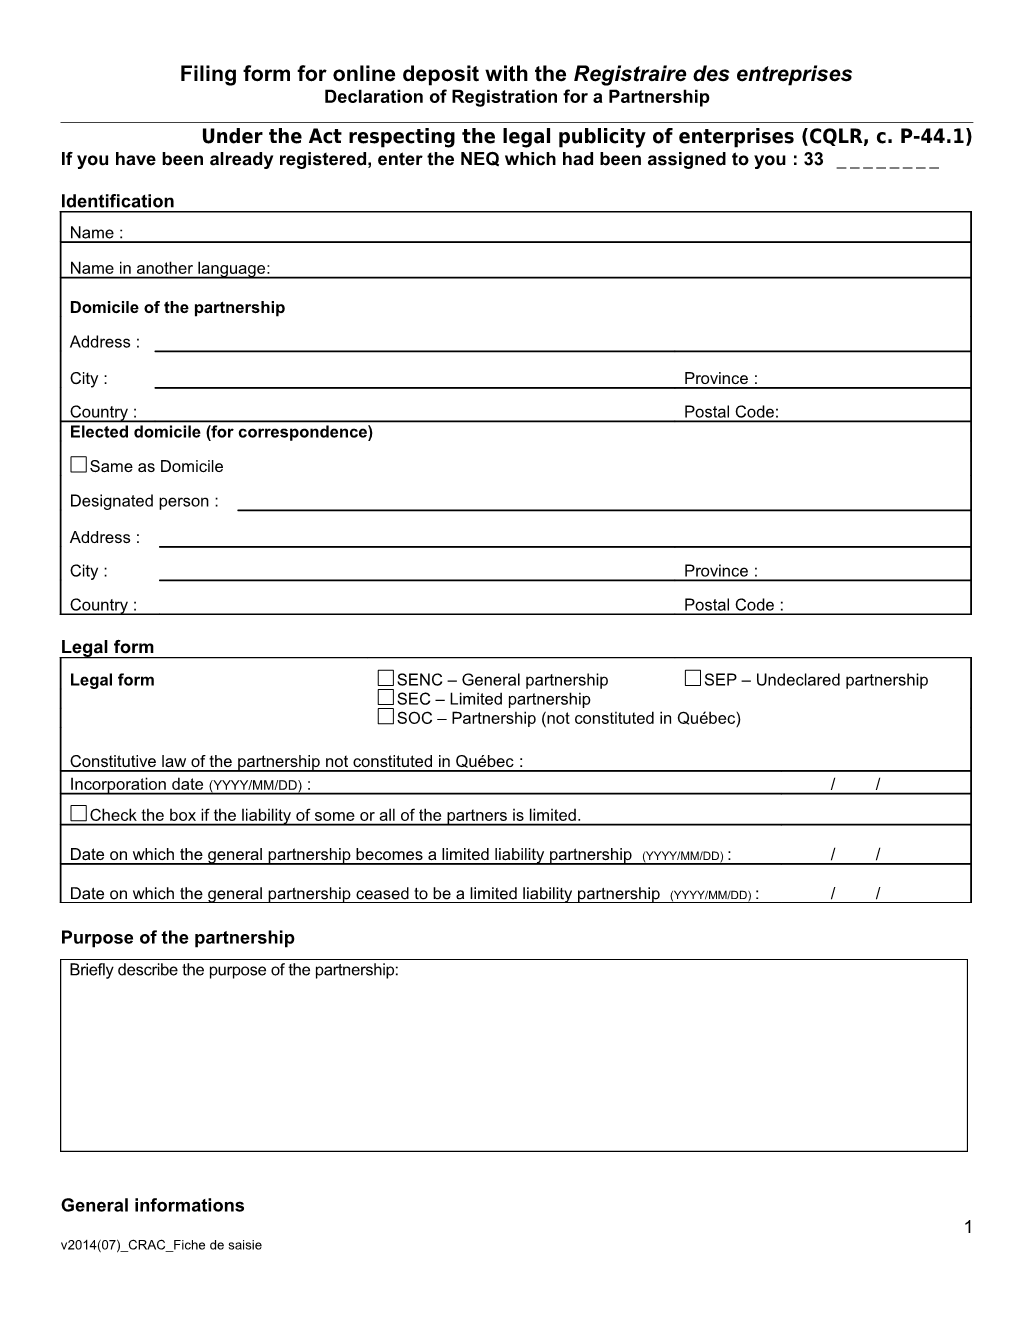 Filing Form for Online Deposit with the Registraire Des Entreprises